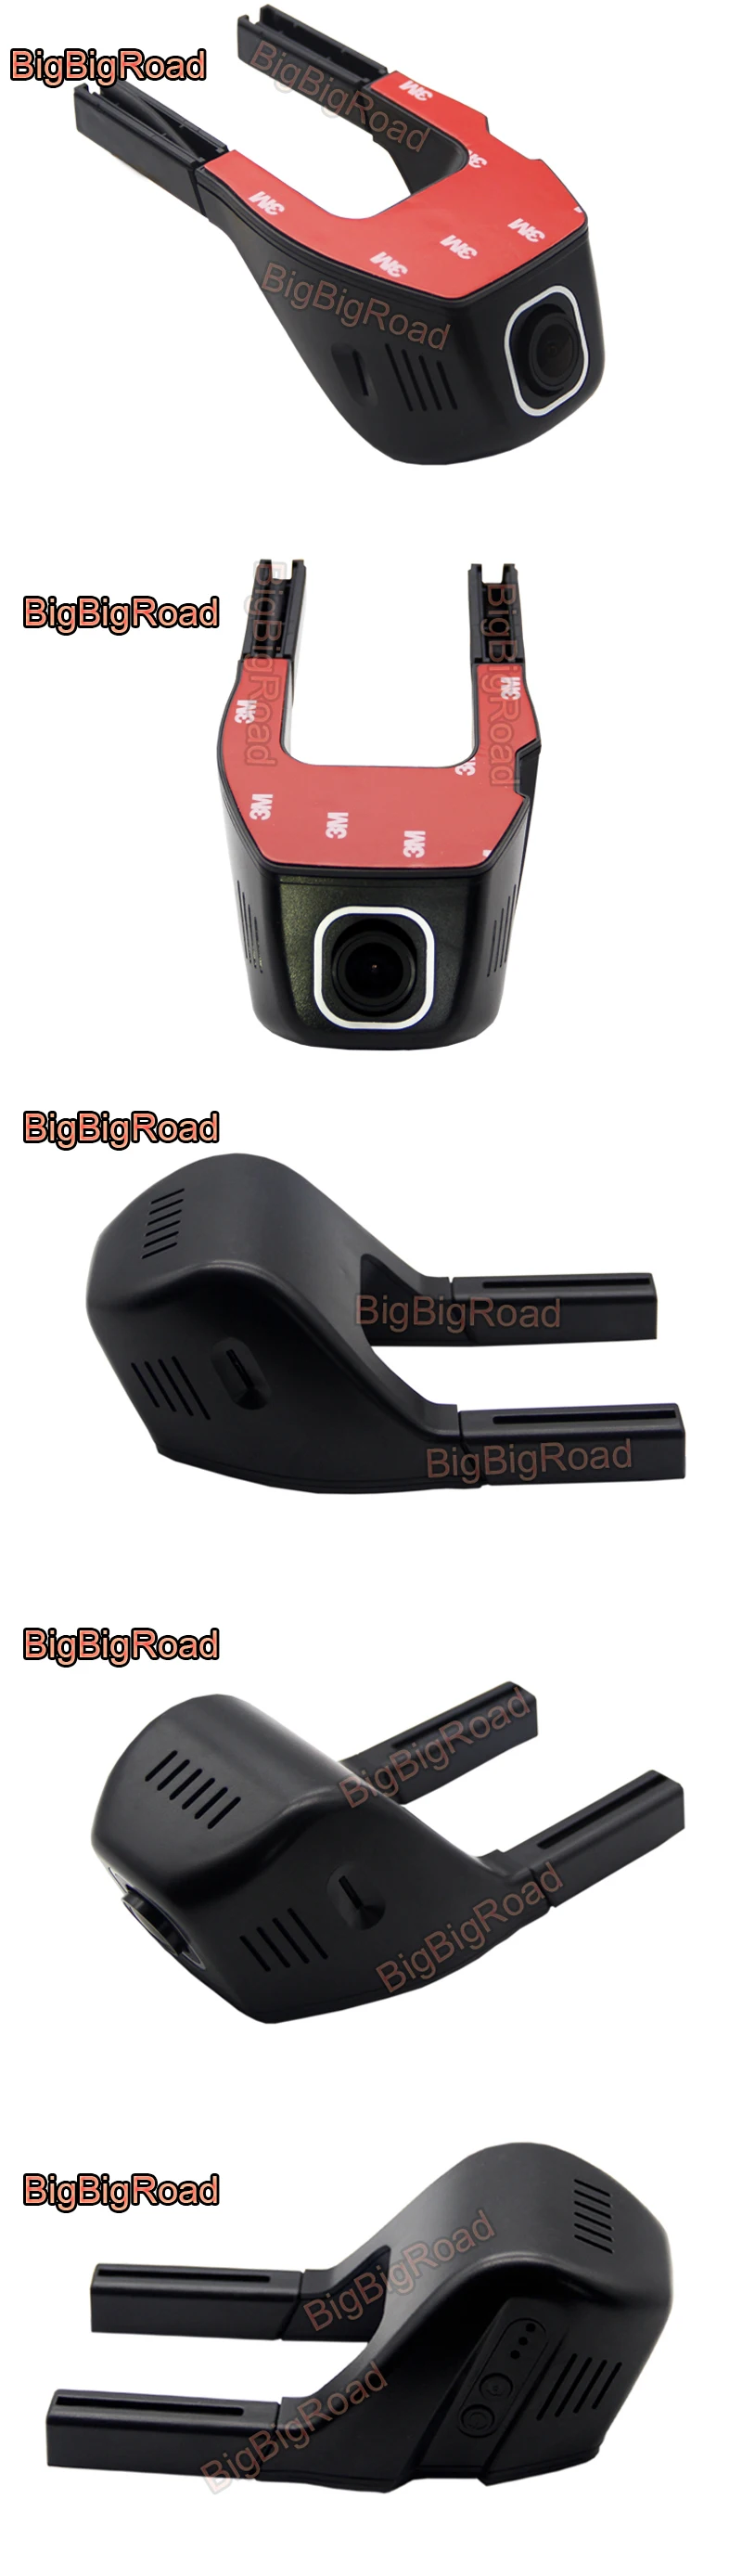 BigBigRoad для автомобиля Toyota Camry Wifi DVR вождения видео рекордер скрытого типа FHD 1080P видеорегистратор ночного видения